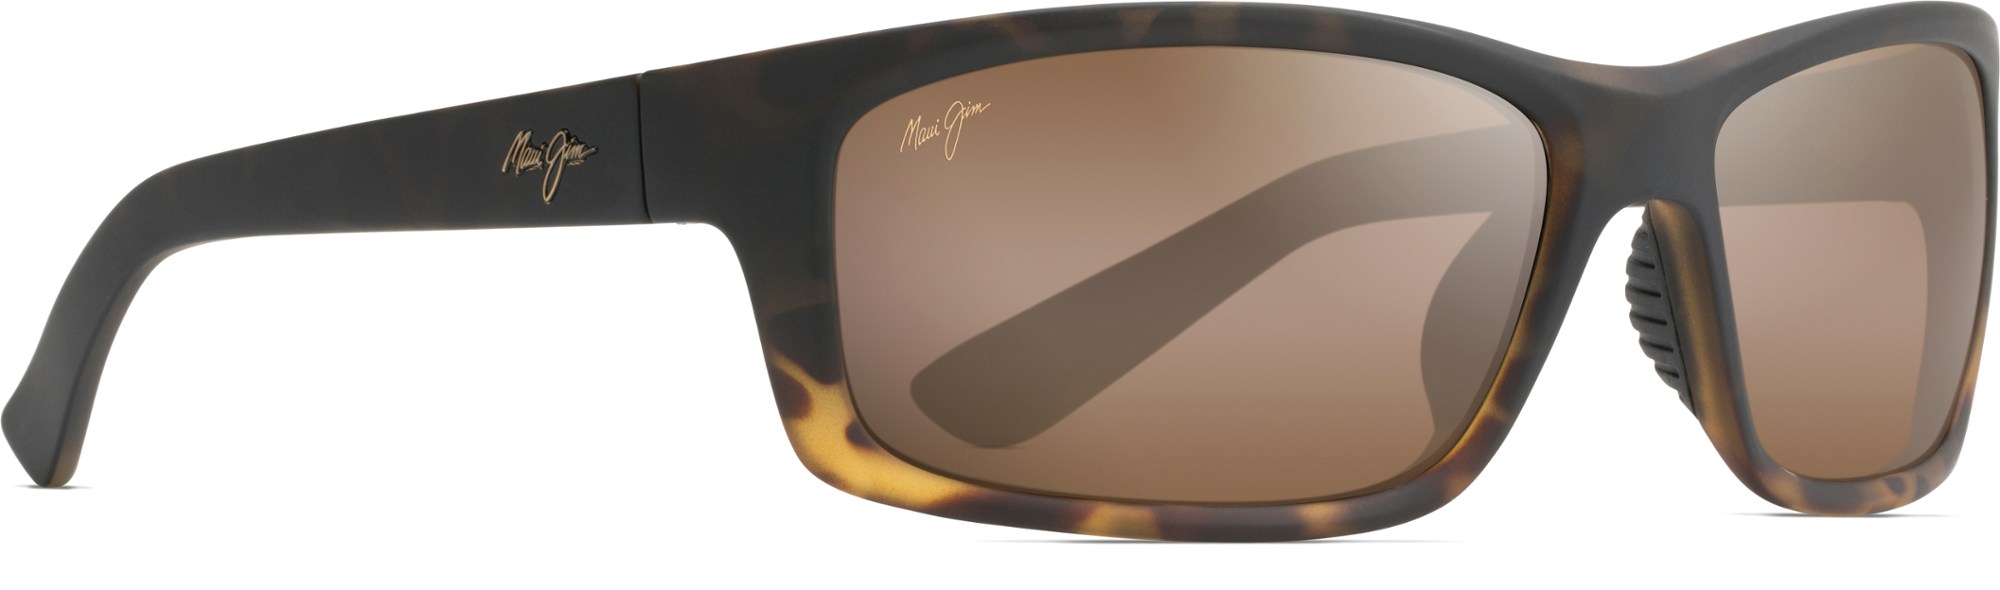 цена Поляризованные солнцезащитные очки Kanaio Coast Maui Jim, коричневый